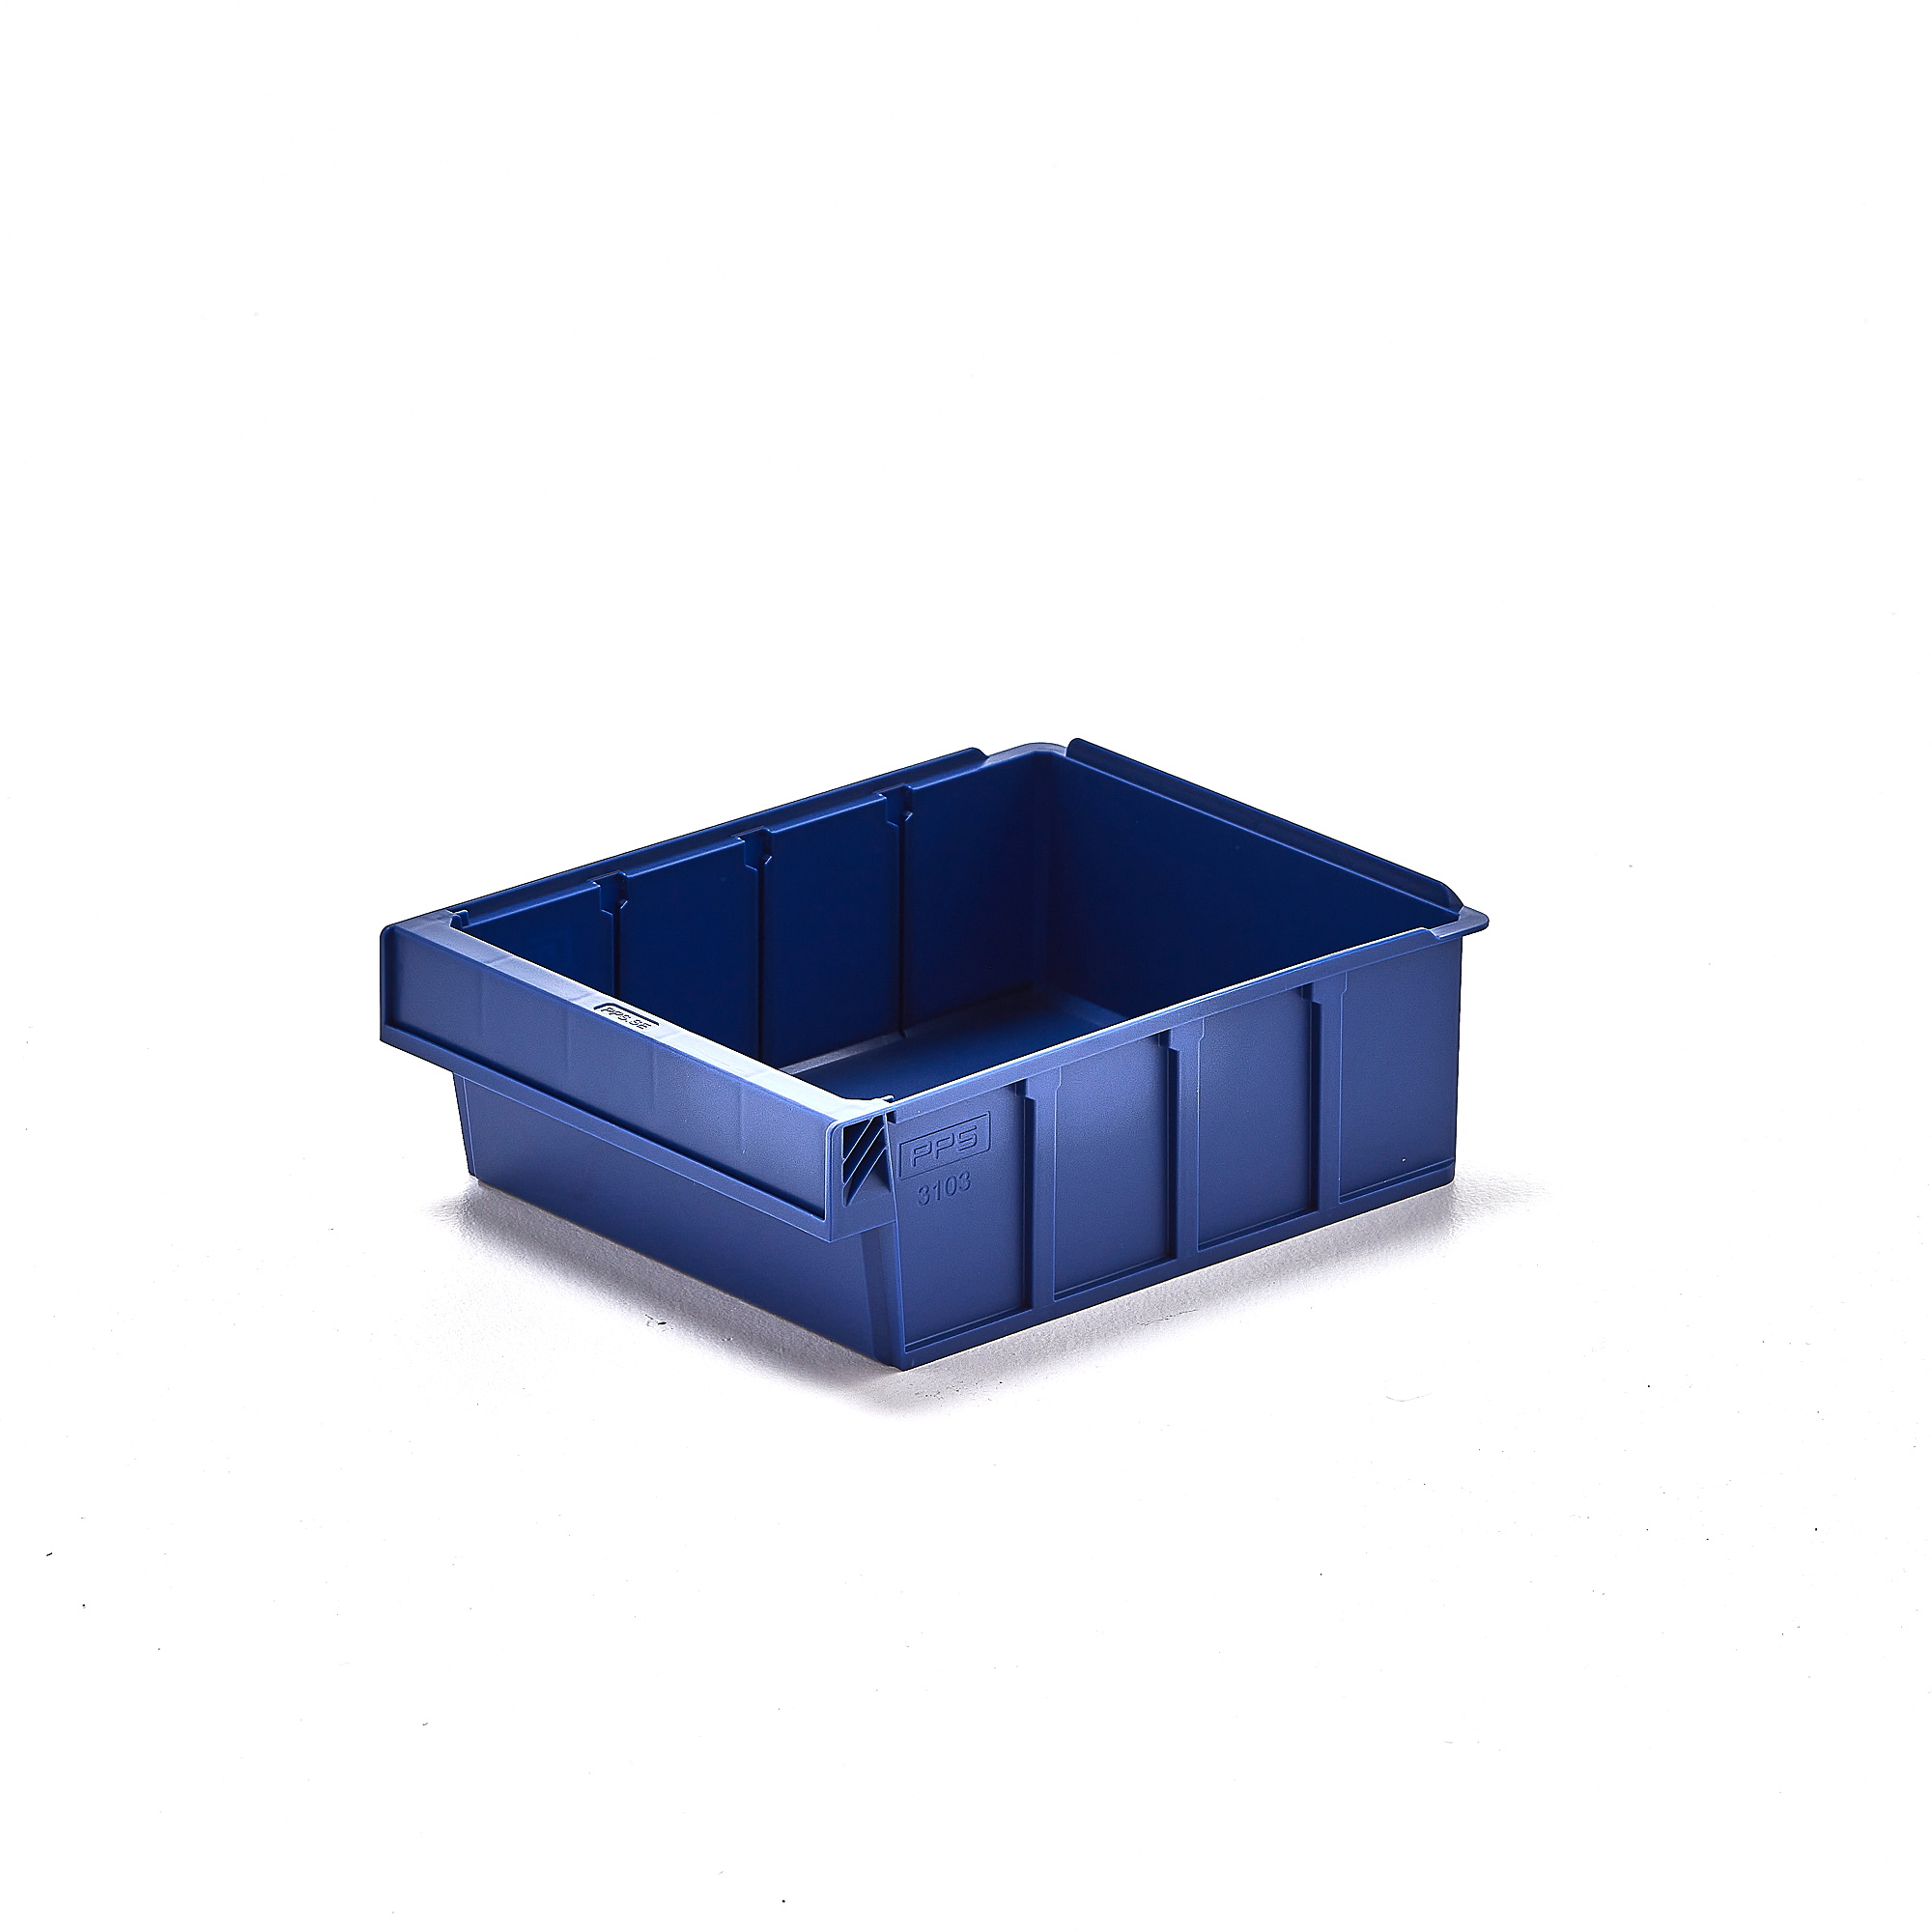 Plastový box DETAIL, 300x230x100 mm, modrý